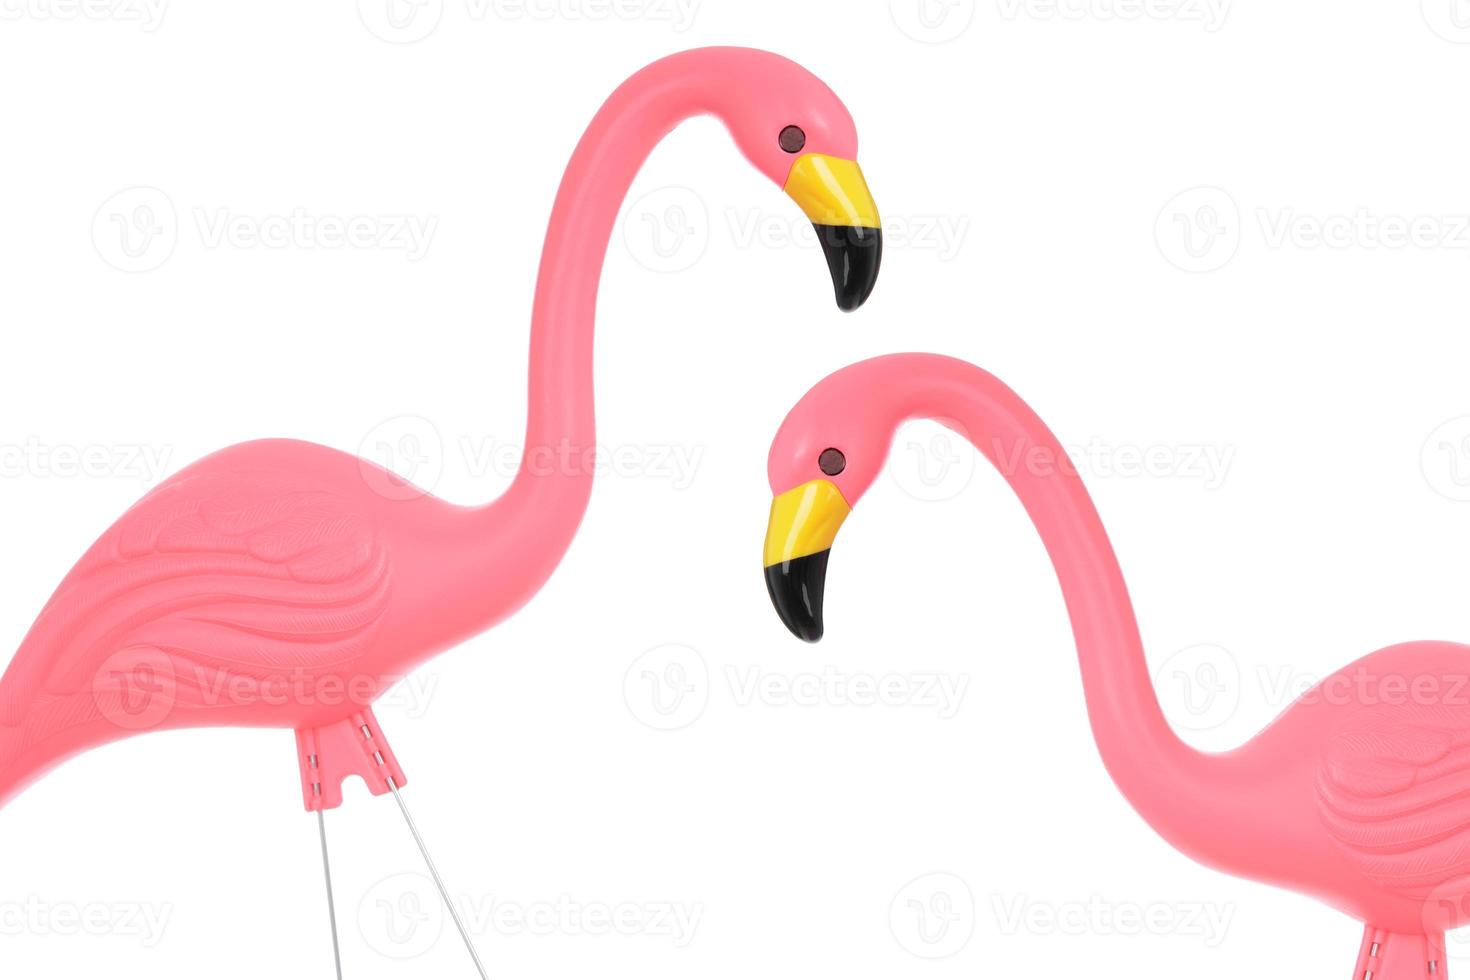 Flamingos foto